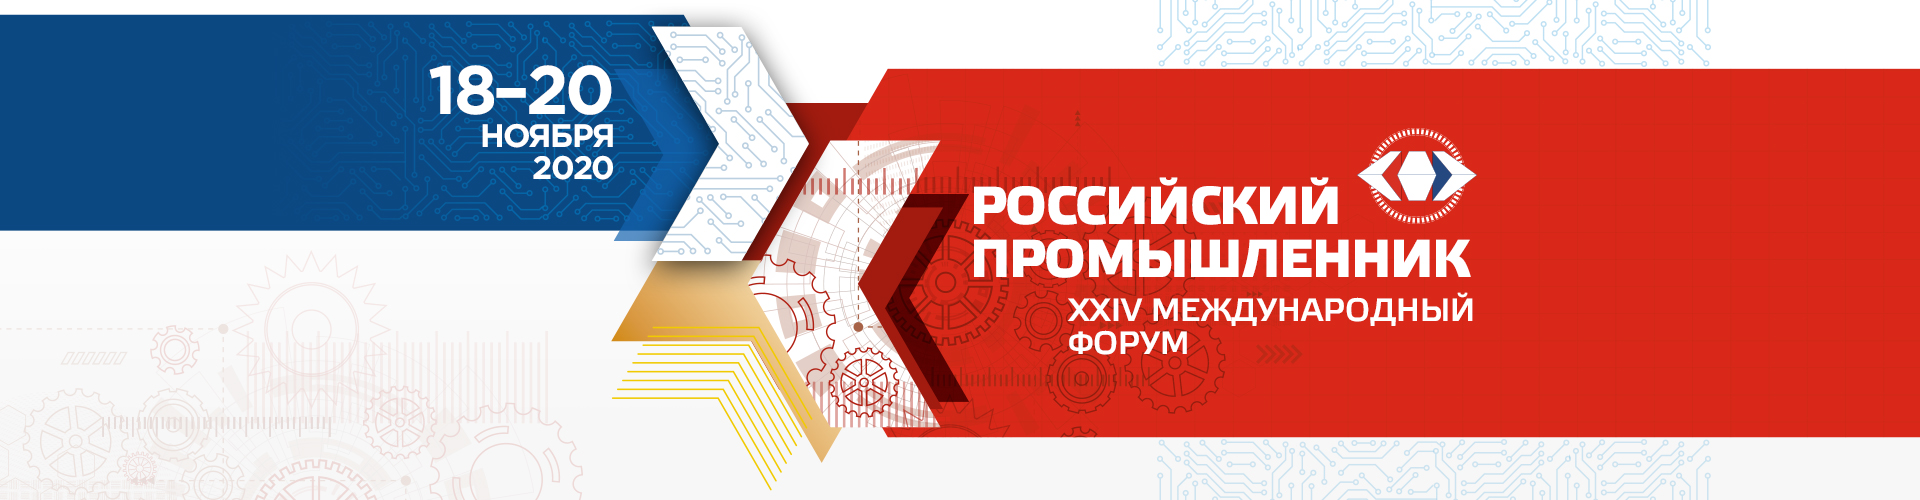 24-й международный форум «Российский Промышленник»